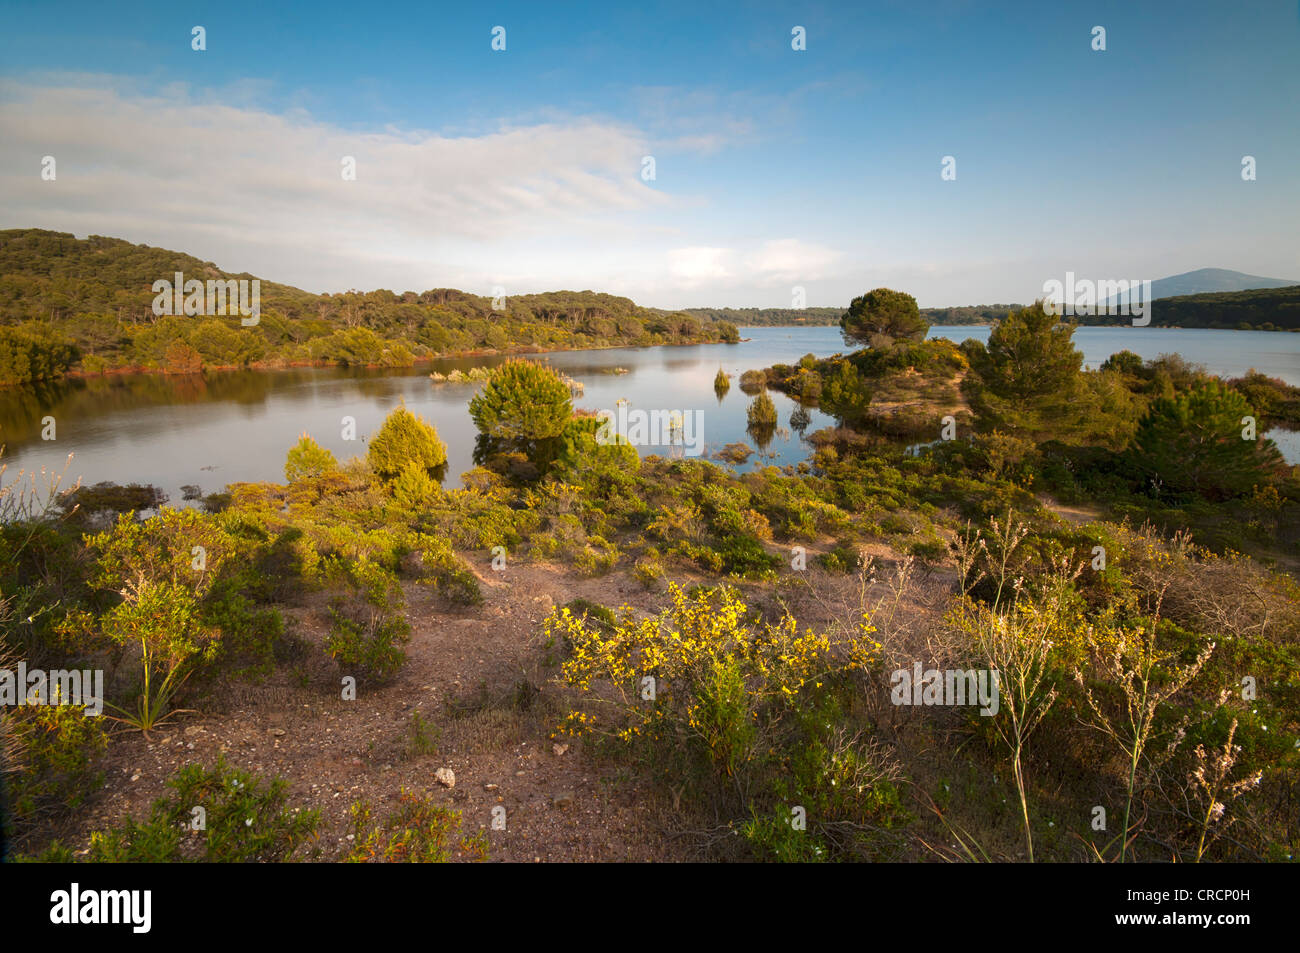 Lago Baratz, the only natural freshwater lake in Sardinia, Alghero, Sardinia, Italy, Europe Stock Photo